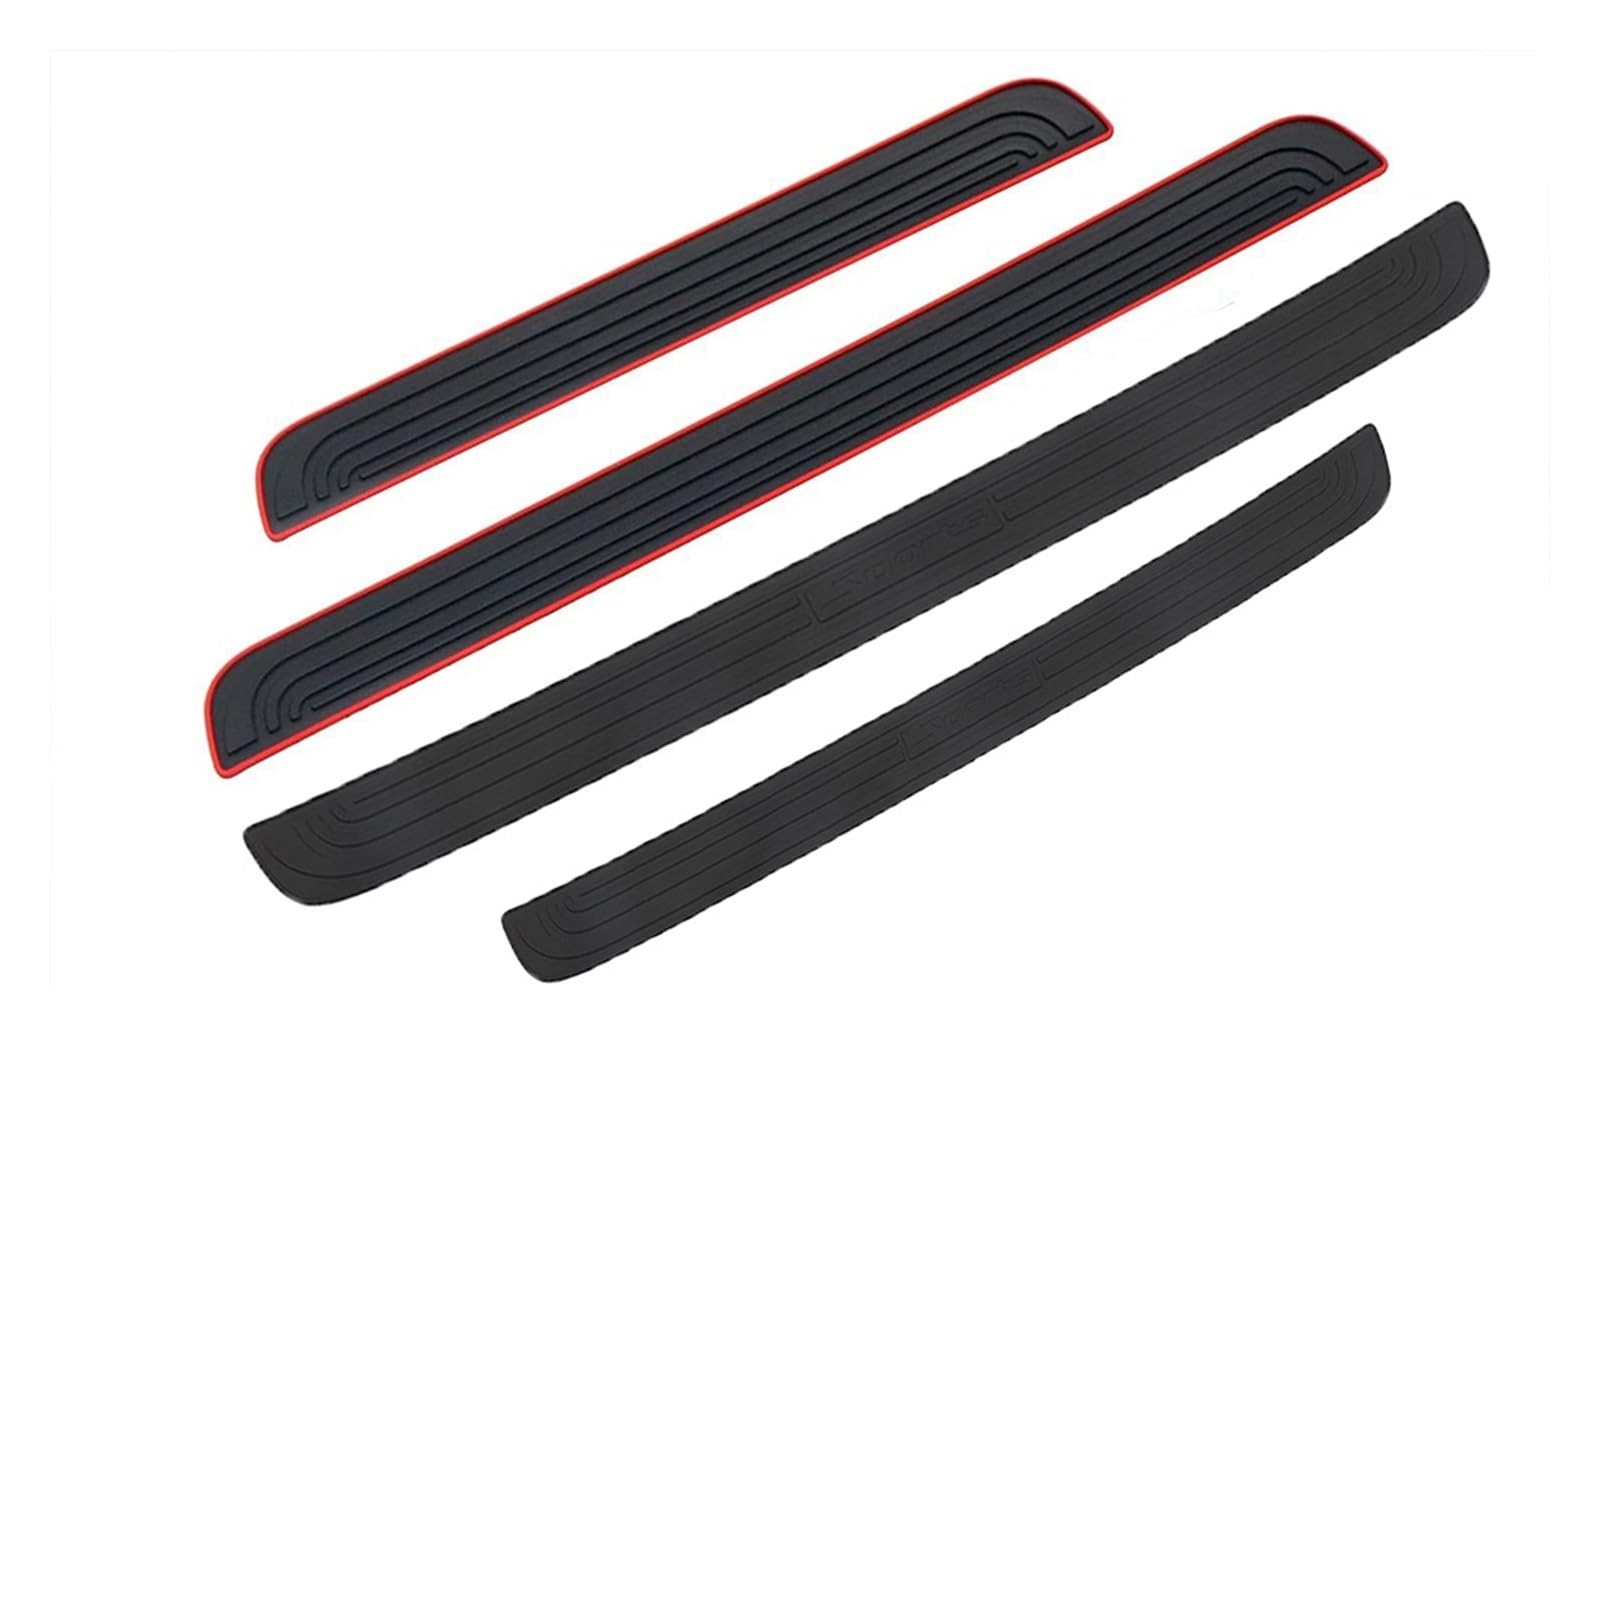 104 cm 90 cm Auto Stamm Tür Sill Platte Schutz Hinten Stoßstange Schutz Gummi Formteile Pad Trim Abdeckung Streifen Auto styling(Black Red-90cmx7cm) von MIXOAE